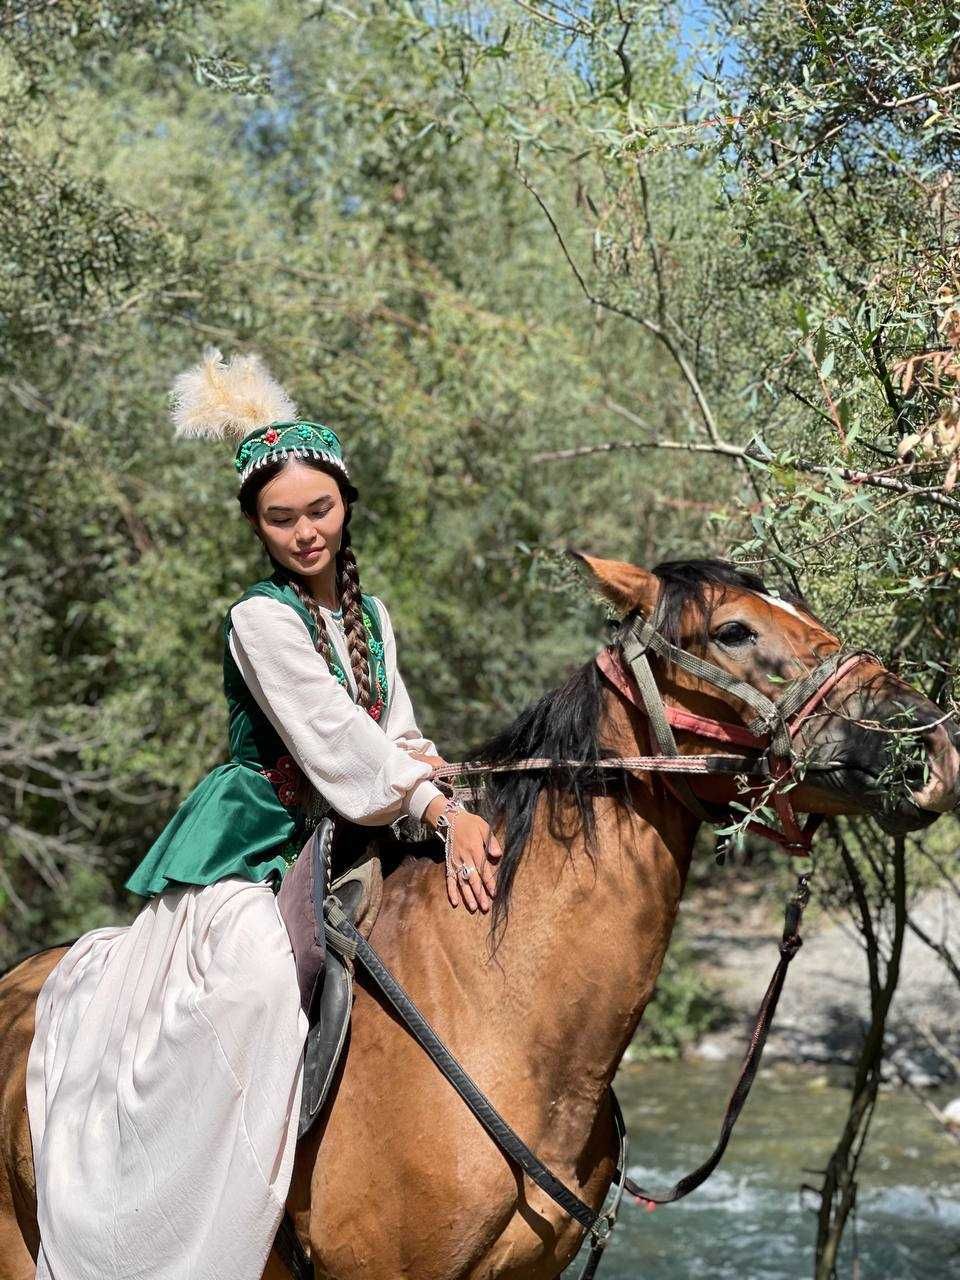 Прокат национальный этно костюм белое платье и зеленый камзол в Алматы